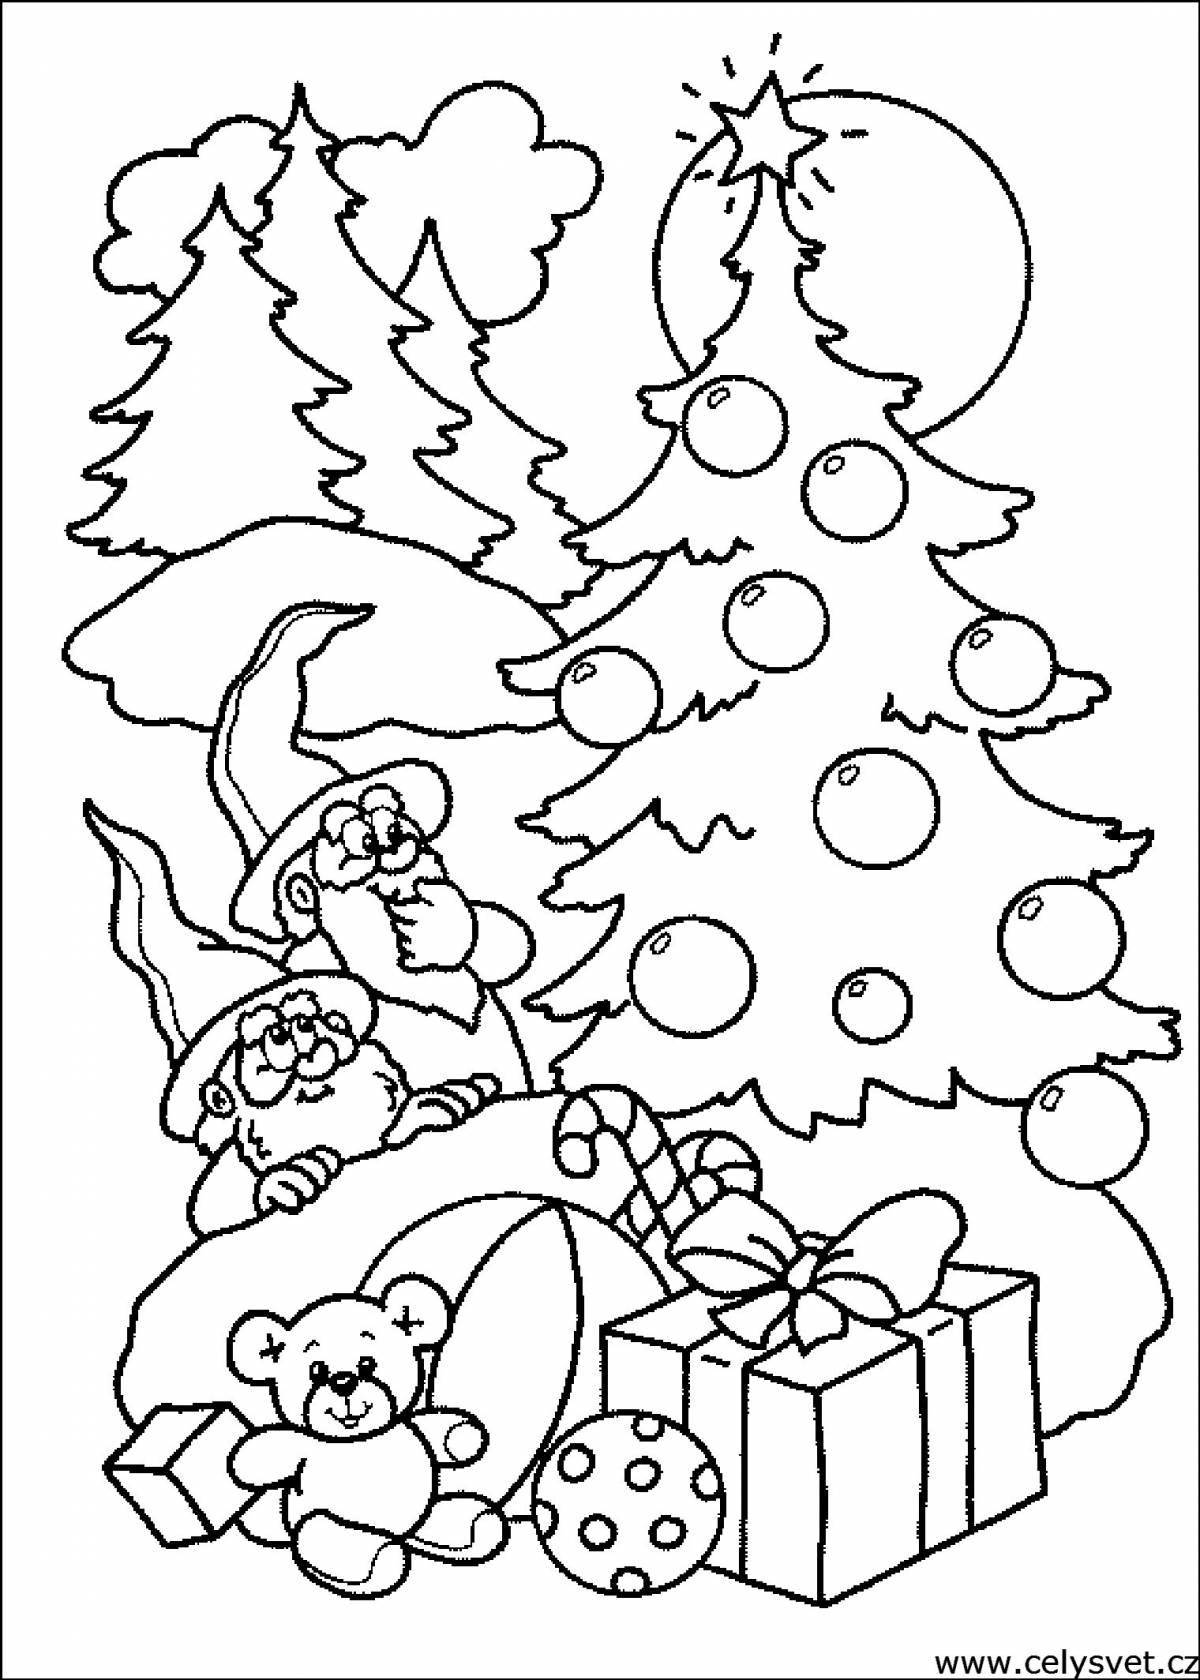 Rampant Christmas coloring book